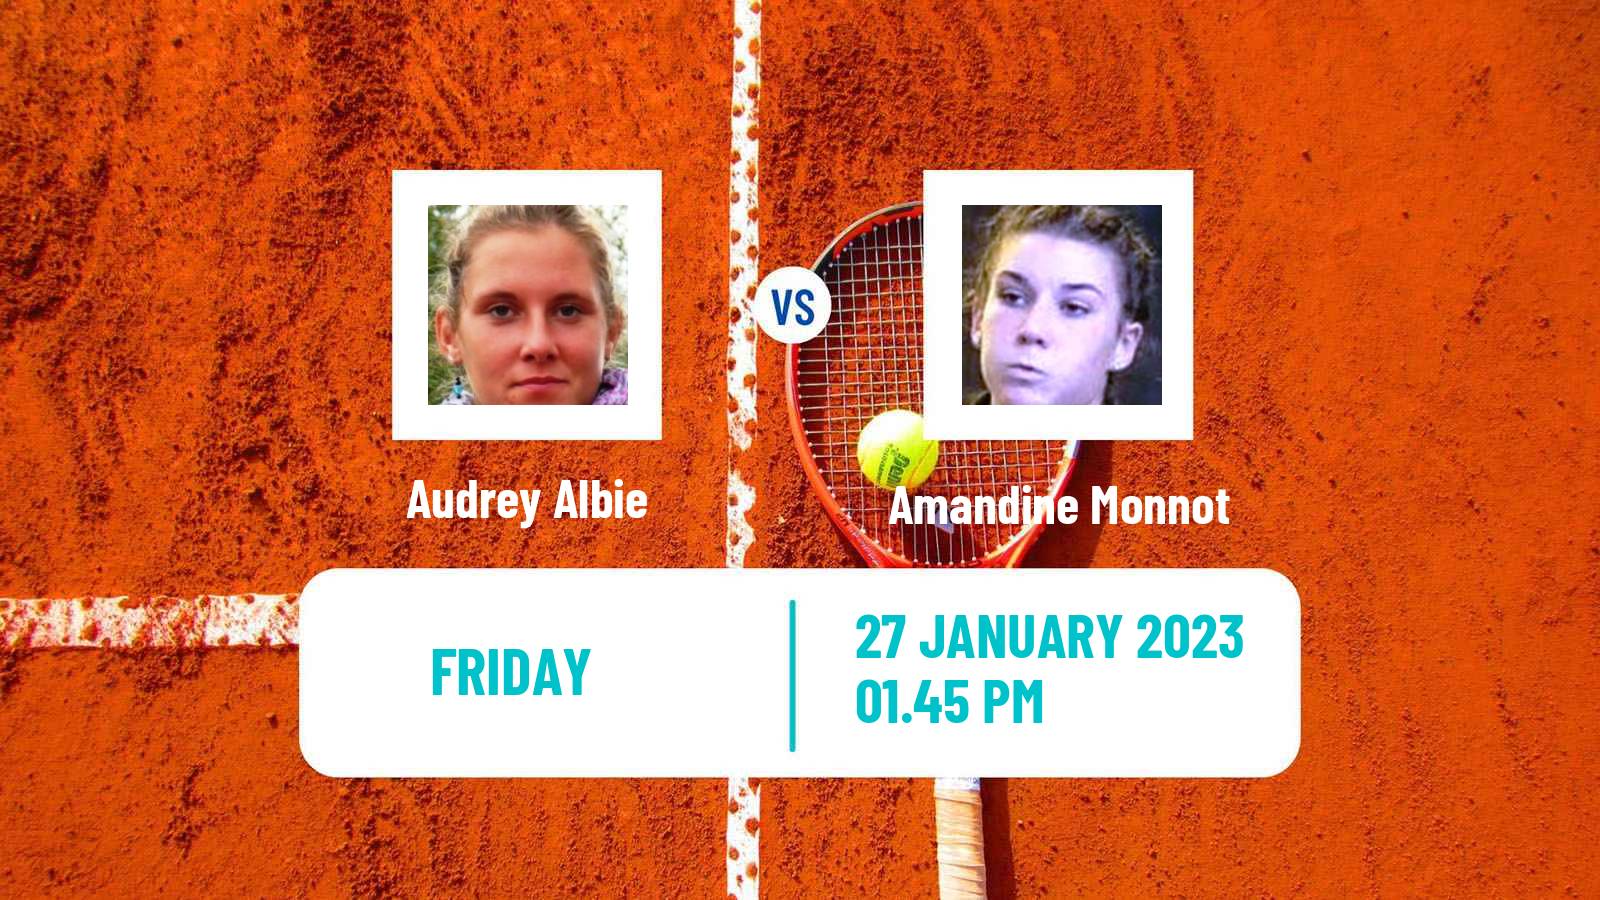 Tennis ITF Tournaments Audrey Albie - Amandine Monnot